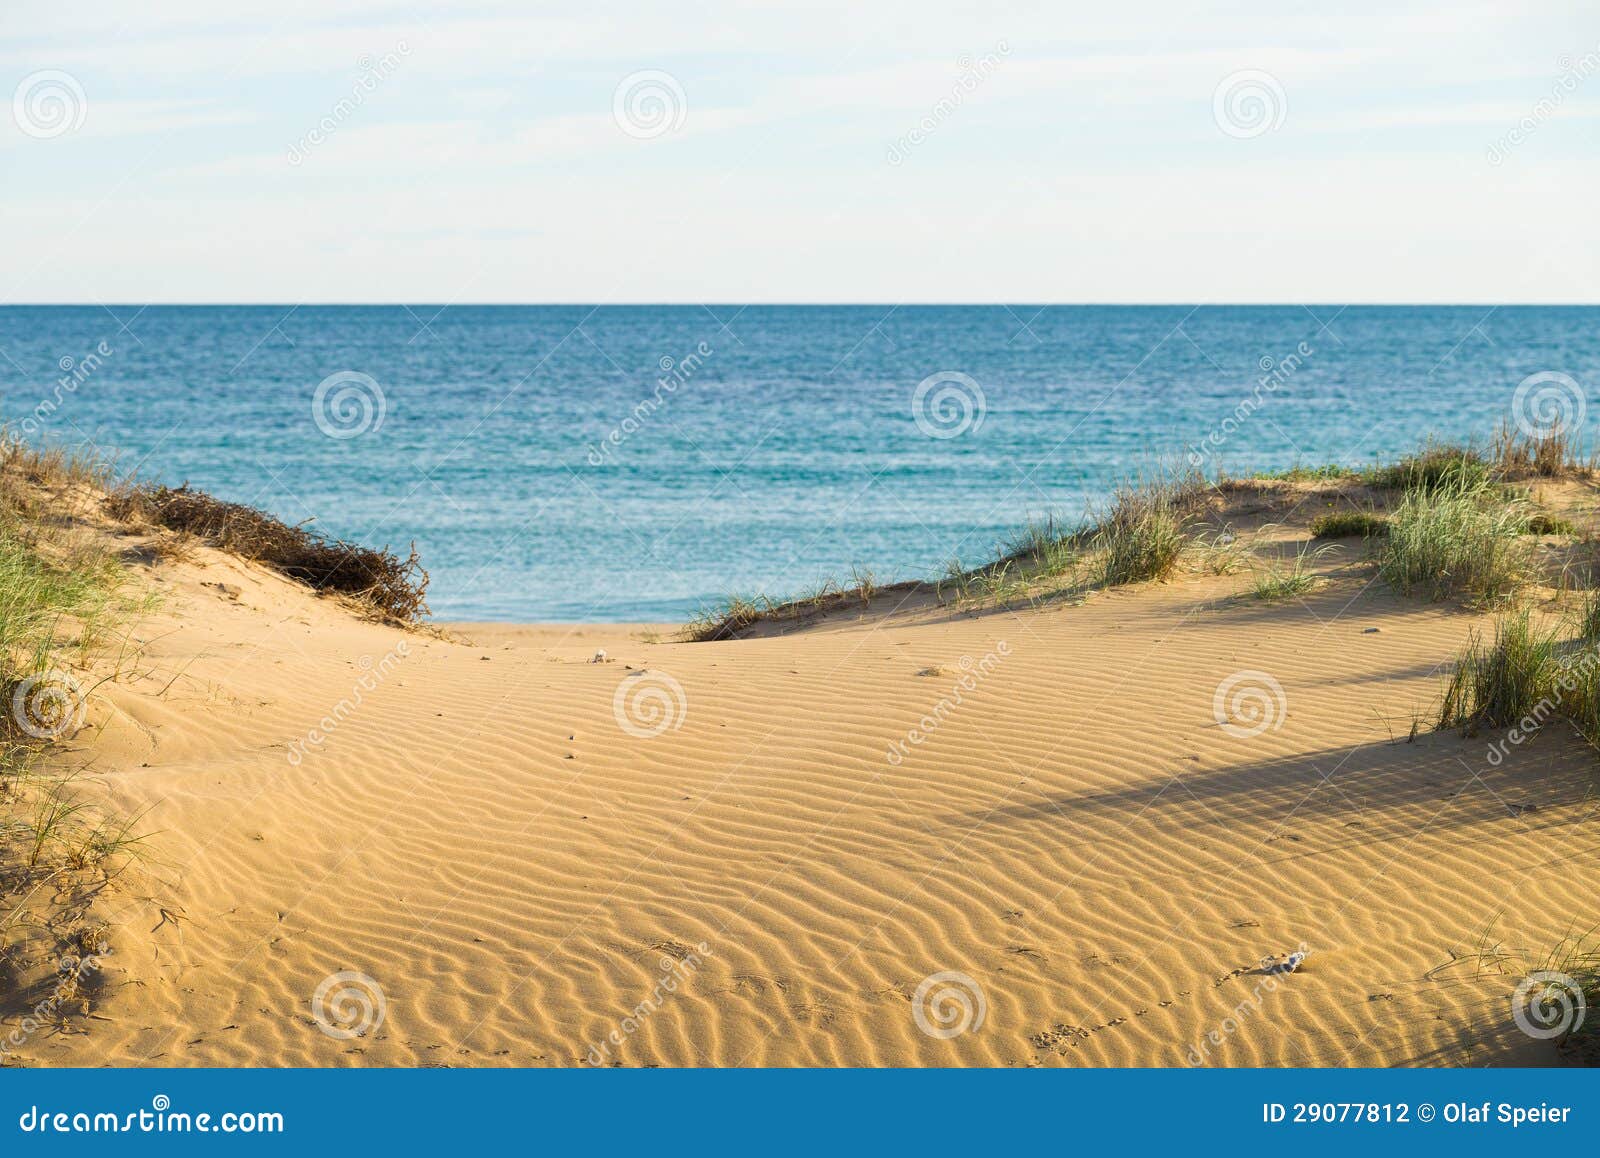 在一个晴朗的海滩沙丘的波浪被风吹扫模式